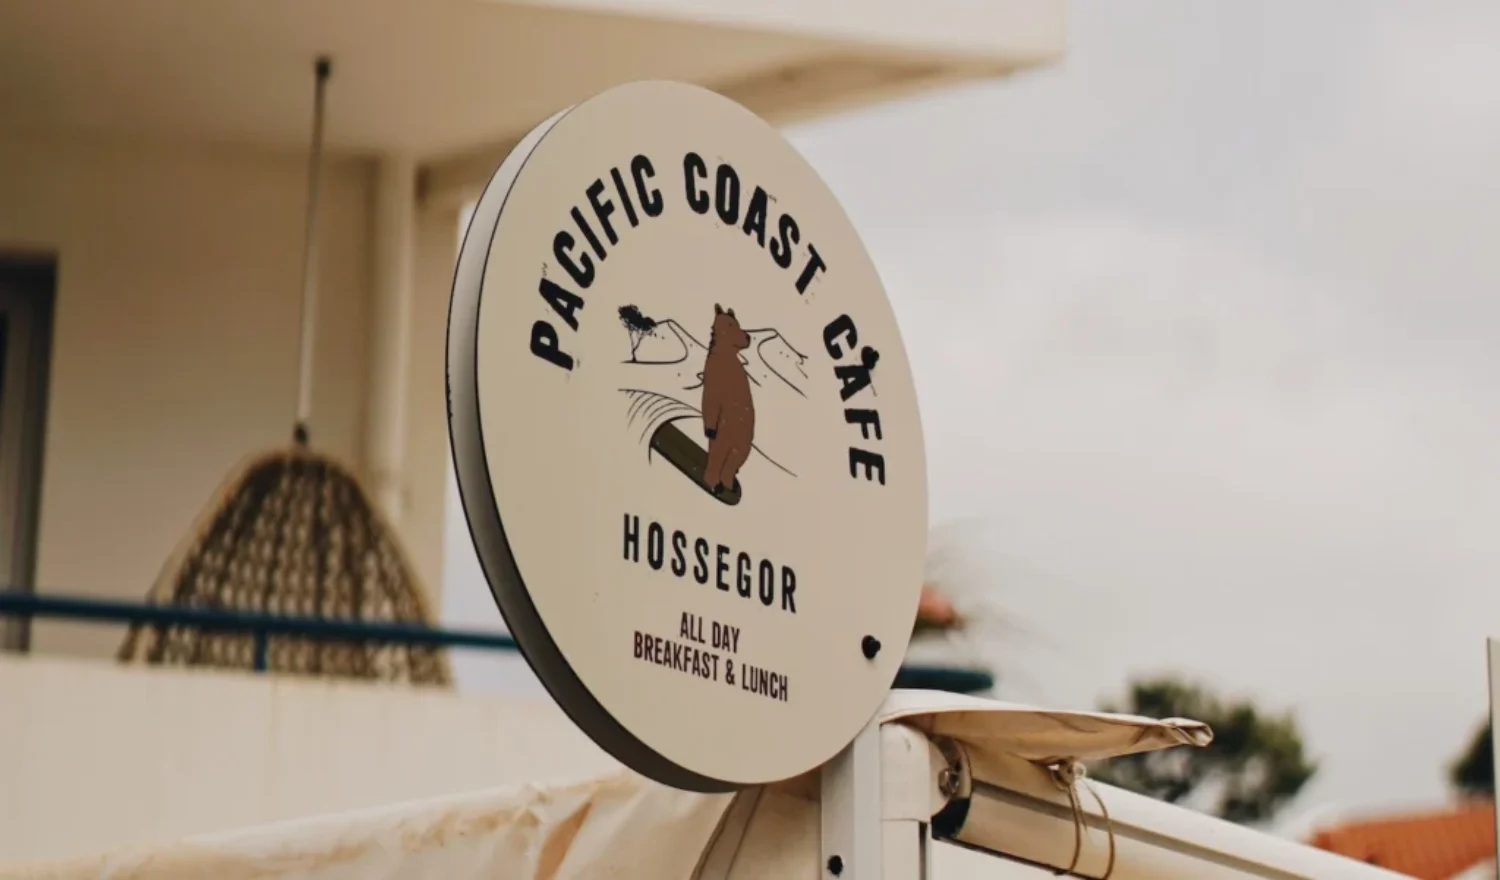 Pacific Coast Café